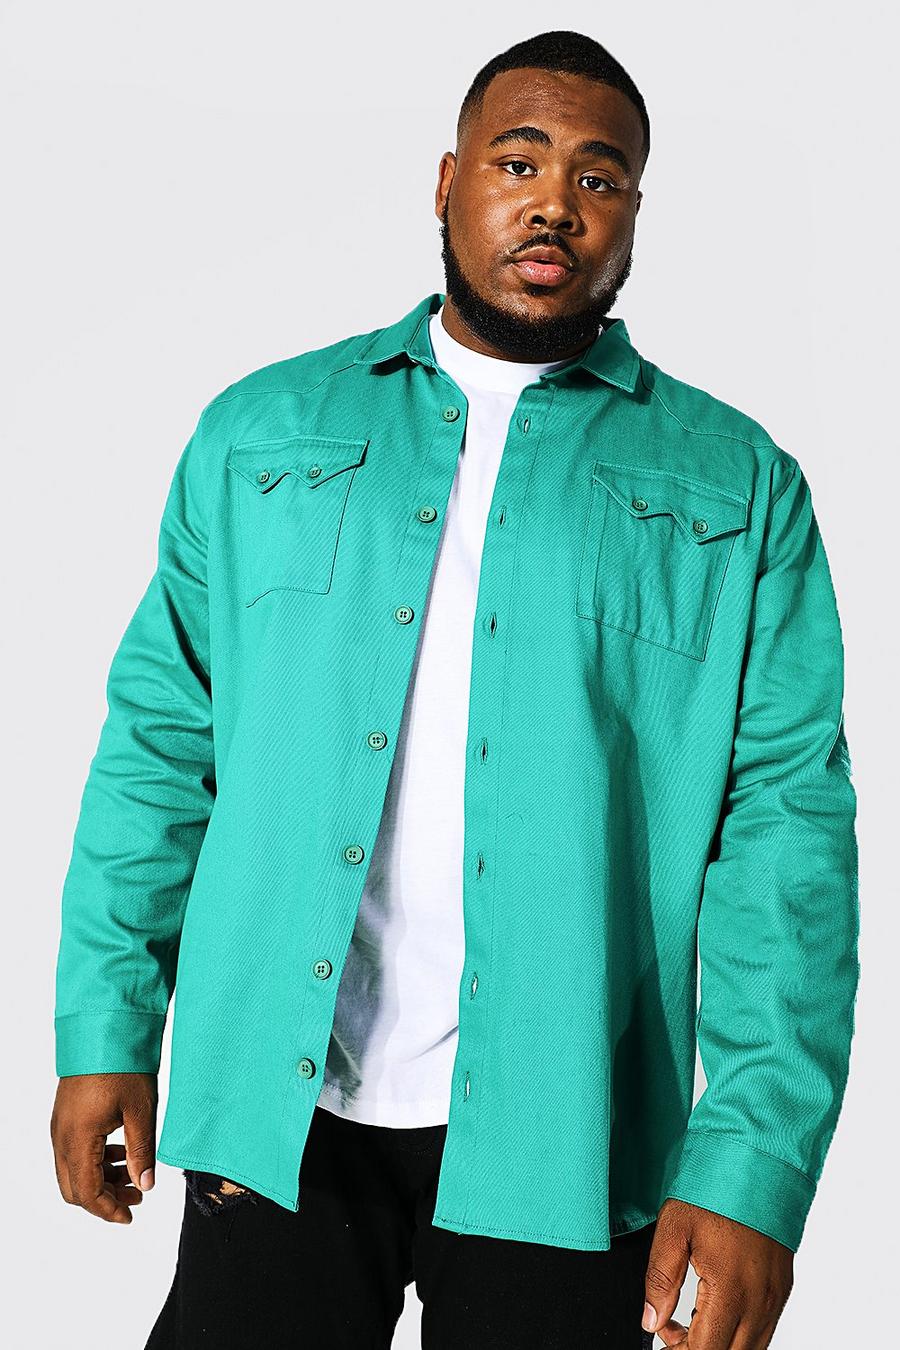 ירוק gerde חולצה טוויל עליונה בסגנון בוקרים עם שרוולים ארוכים, למידות גדולות